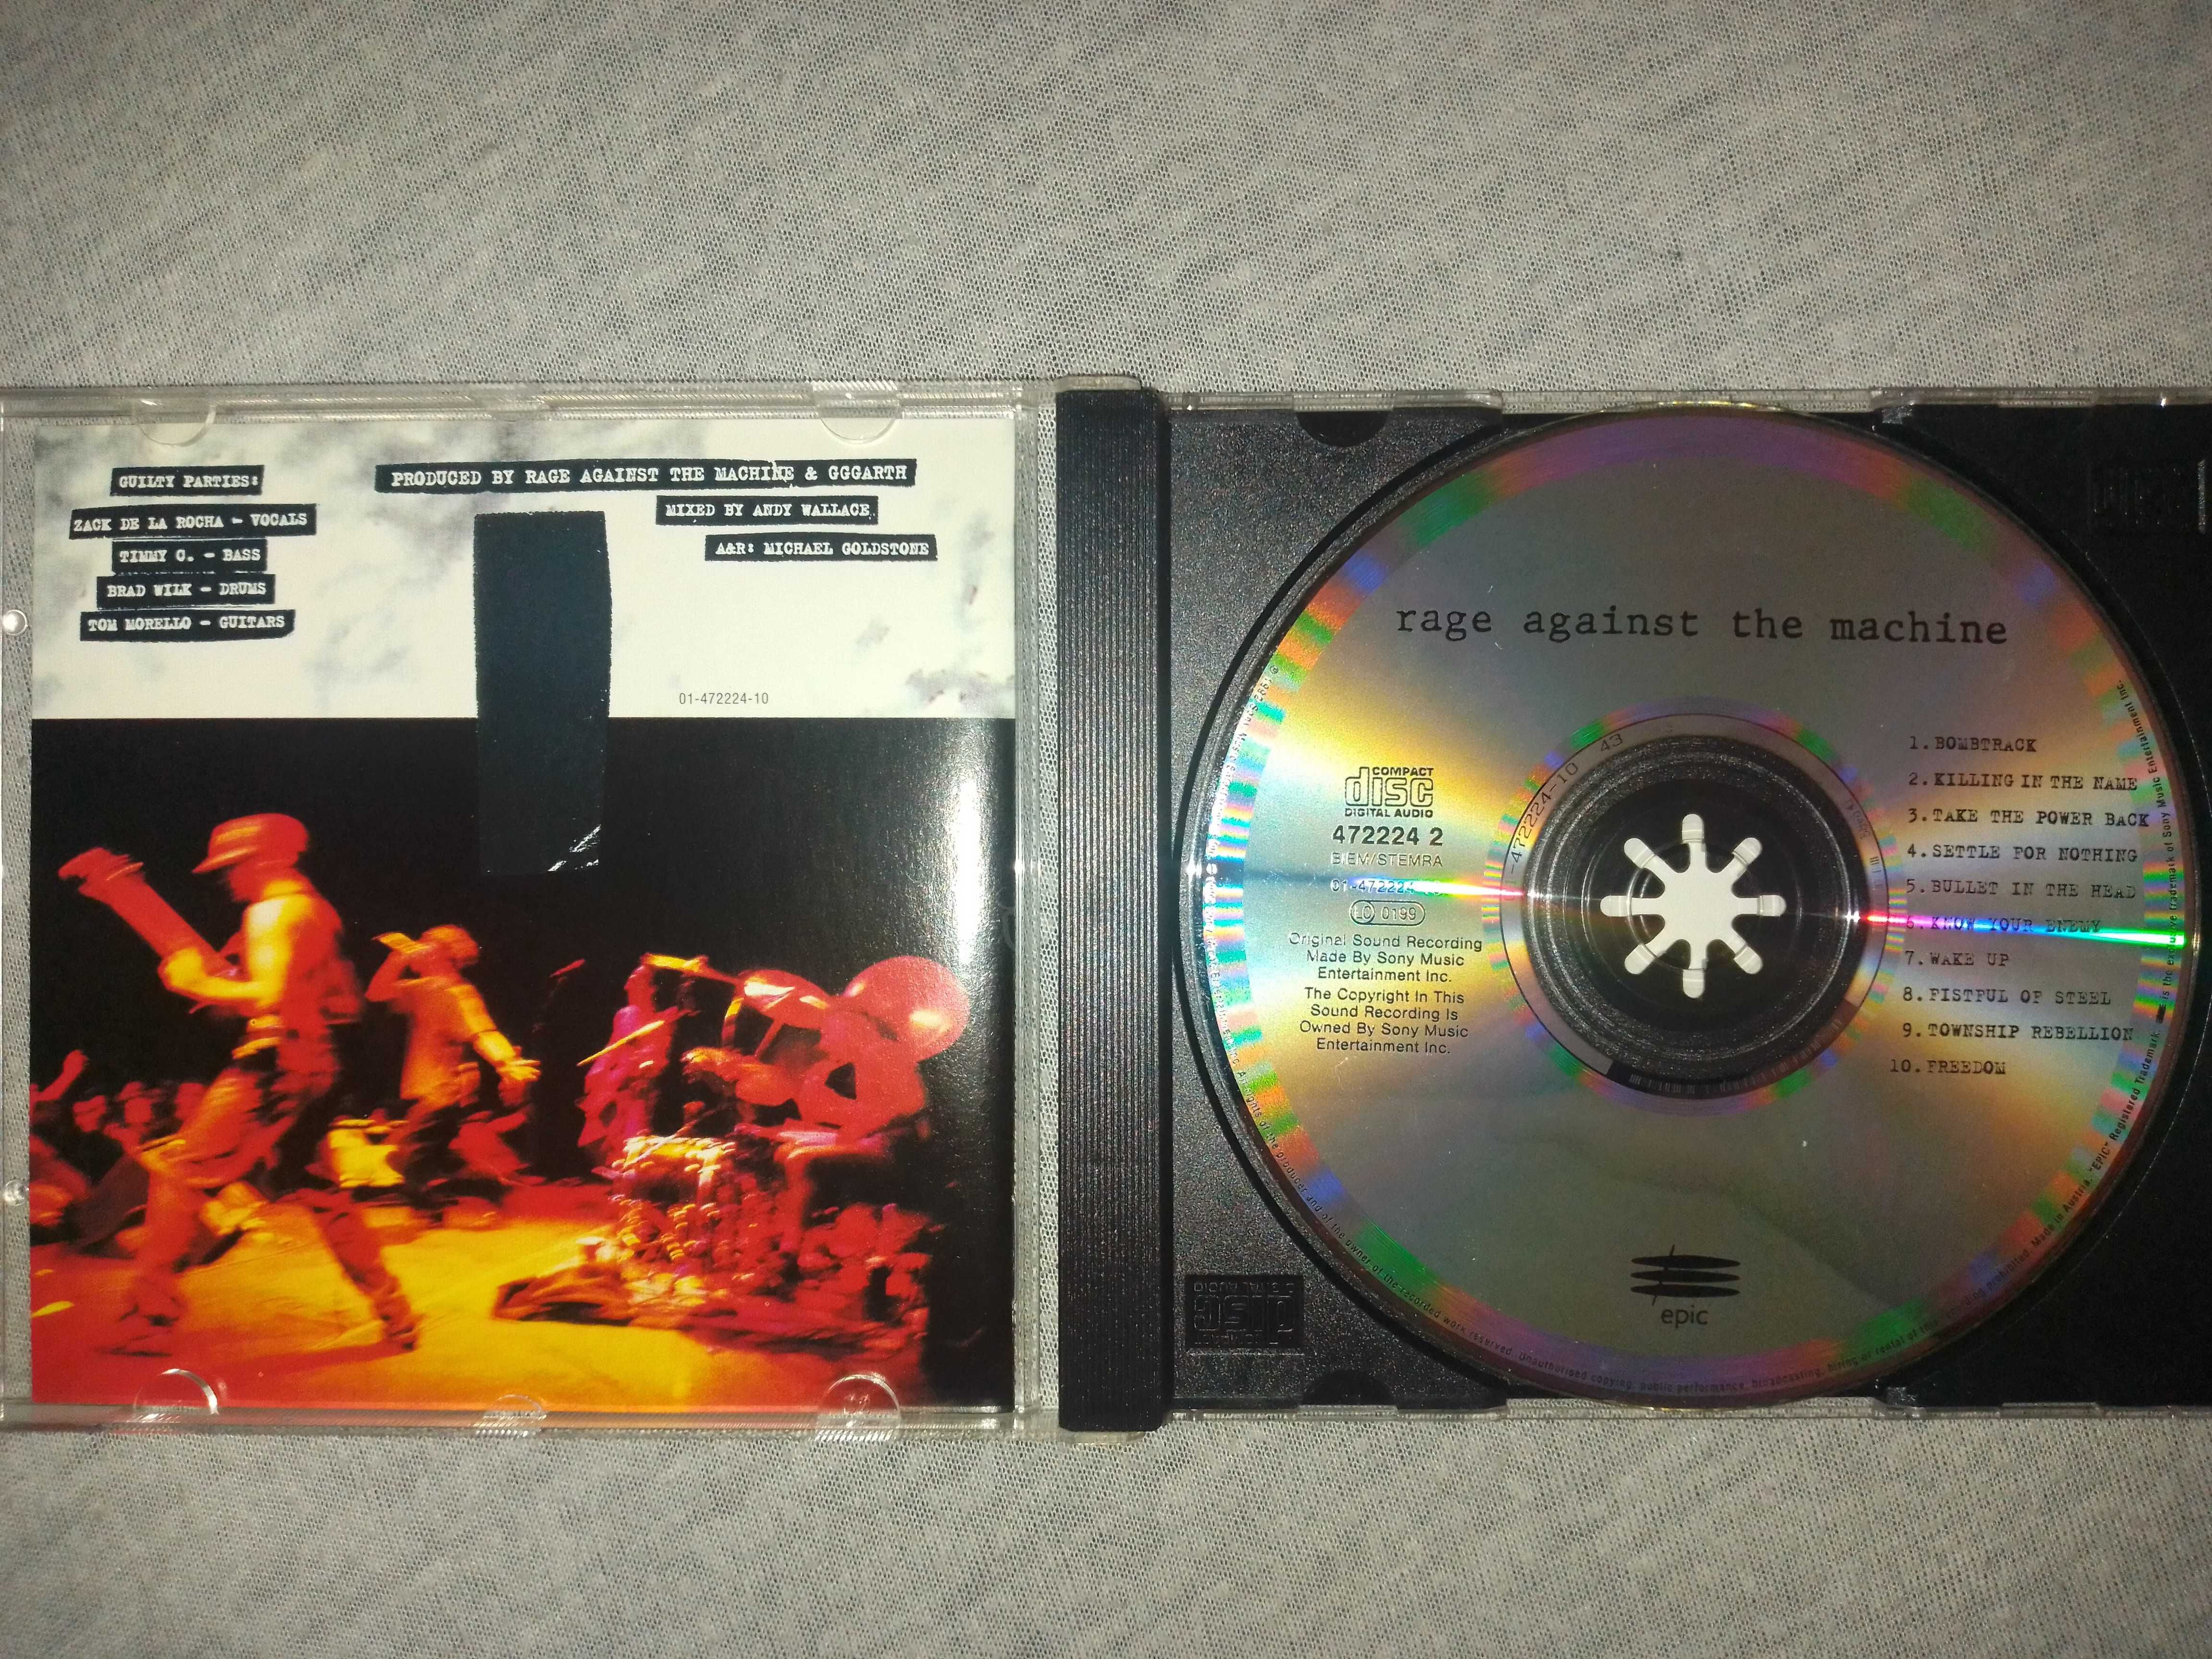 Rage Against The Machine "Rage Against The Machine" Made In Austria.